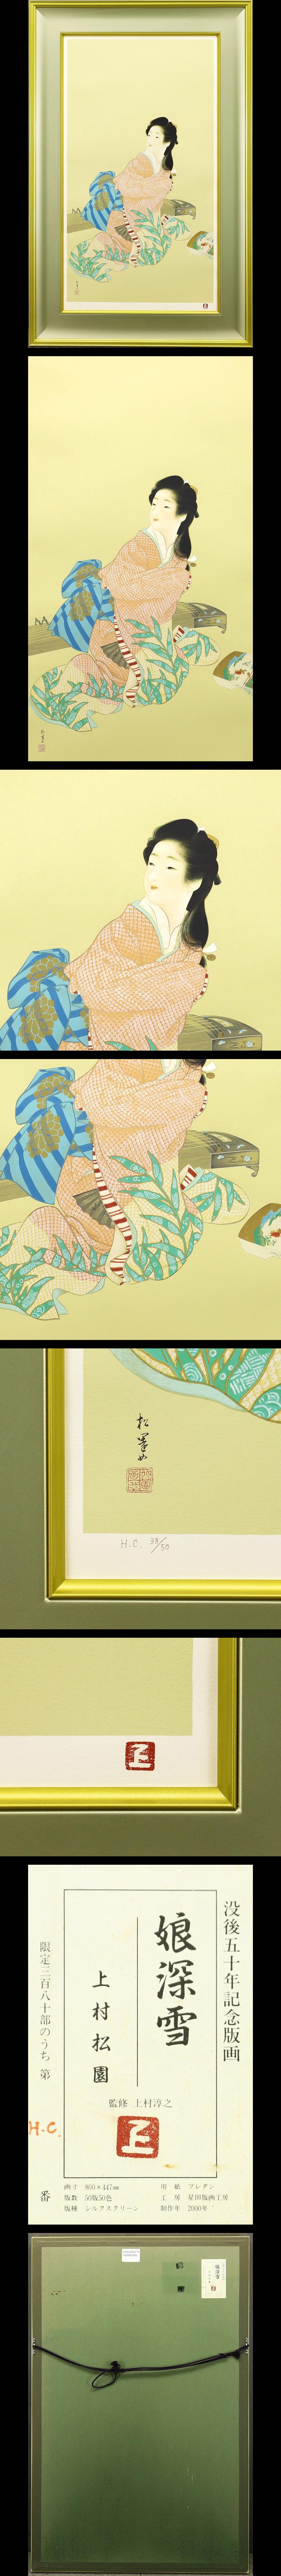 上村松園☆「御ひなの図」シルクスクリーン 証明シール 付 版画